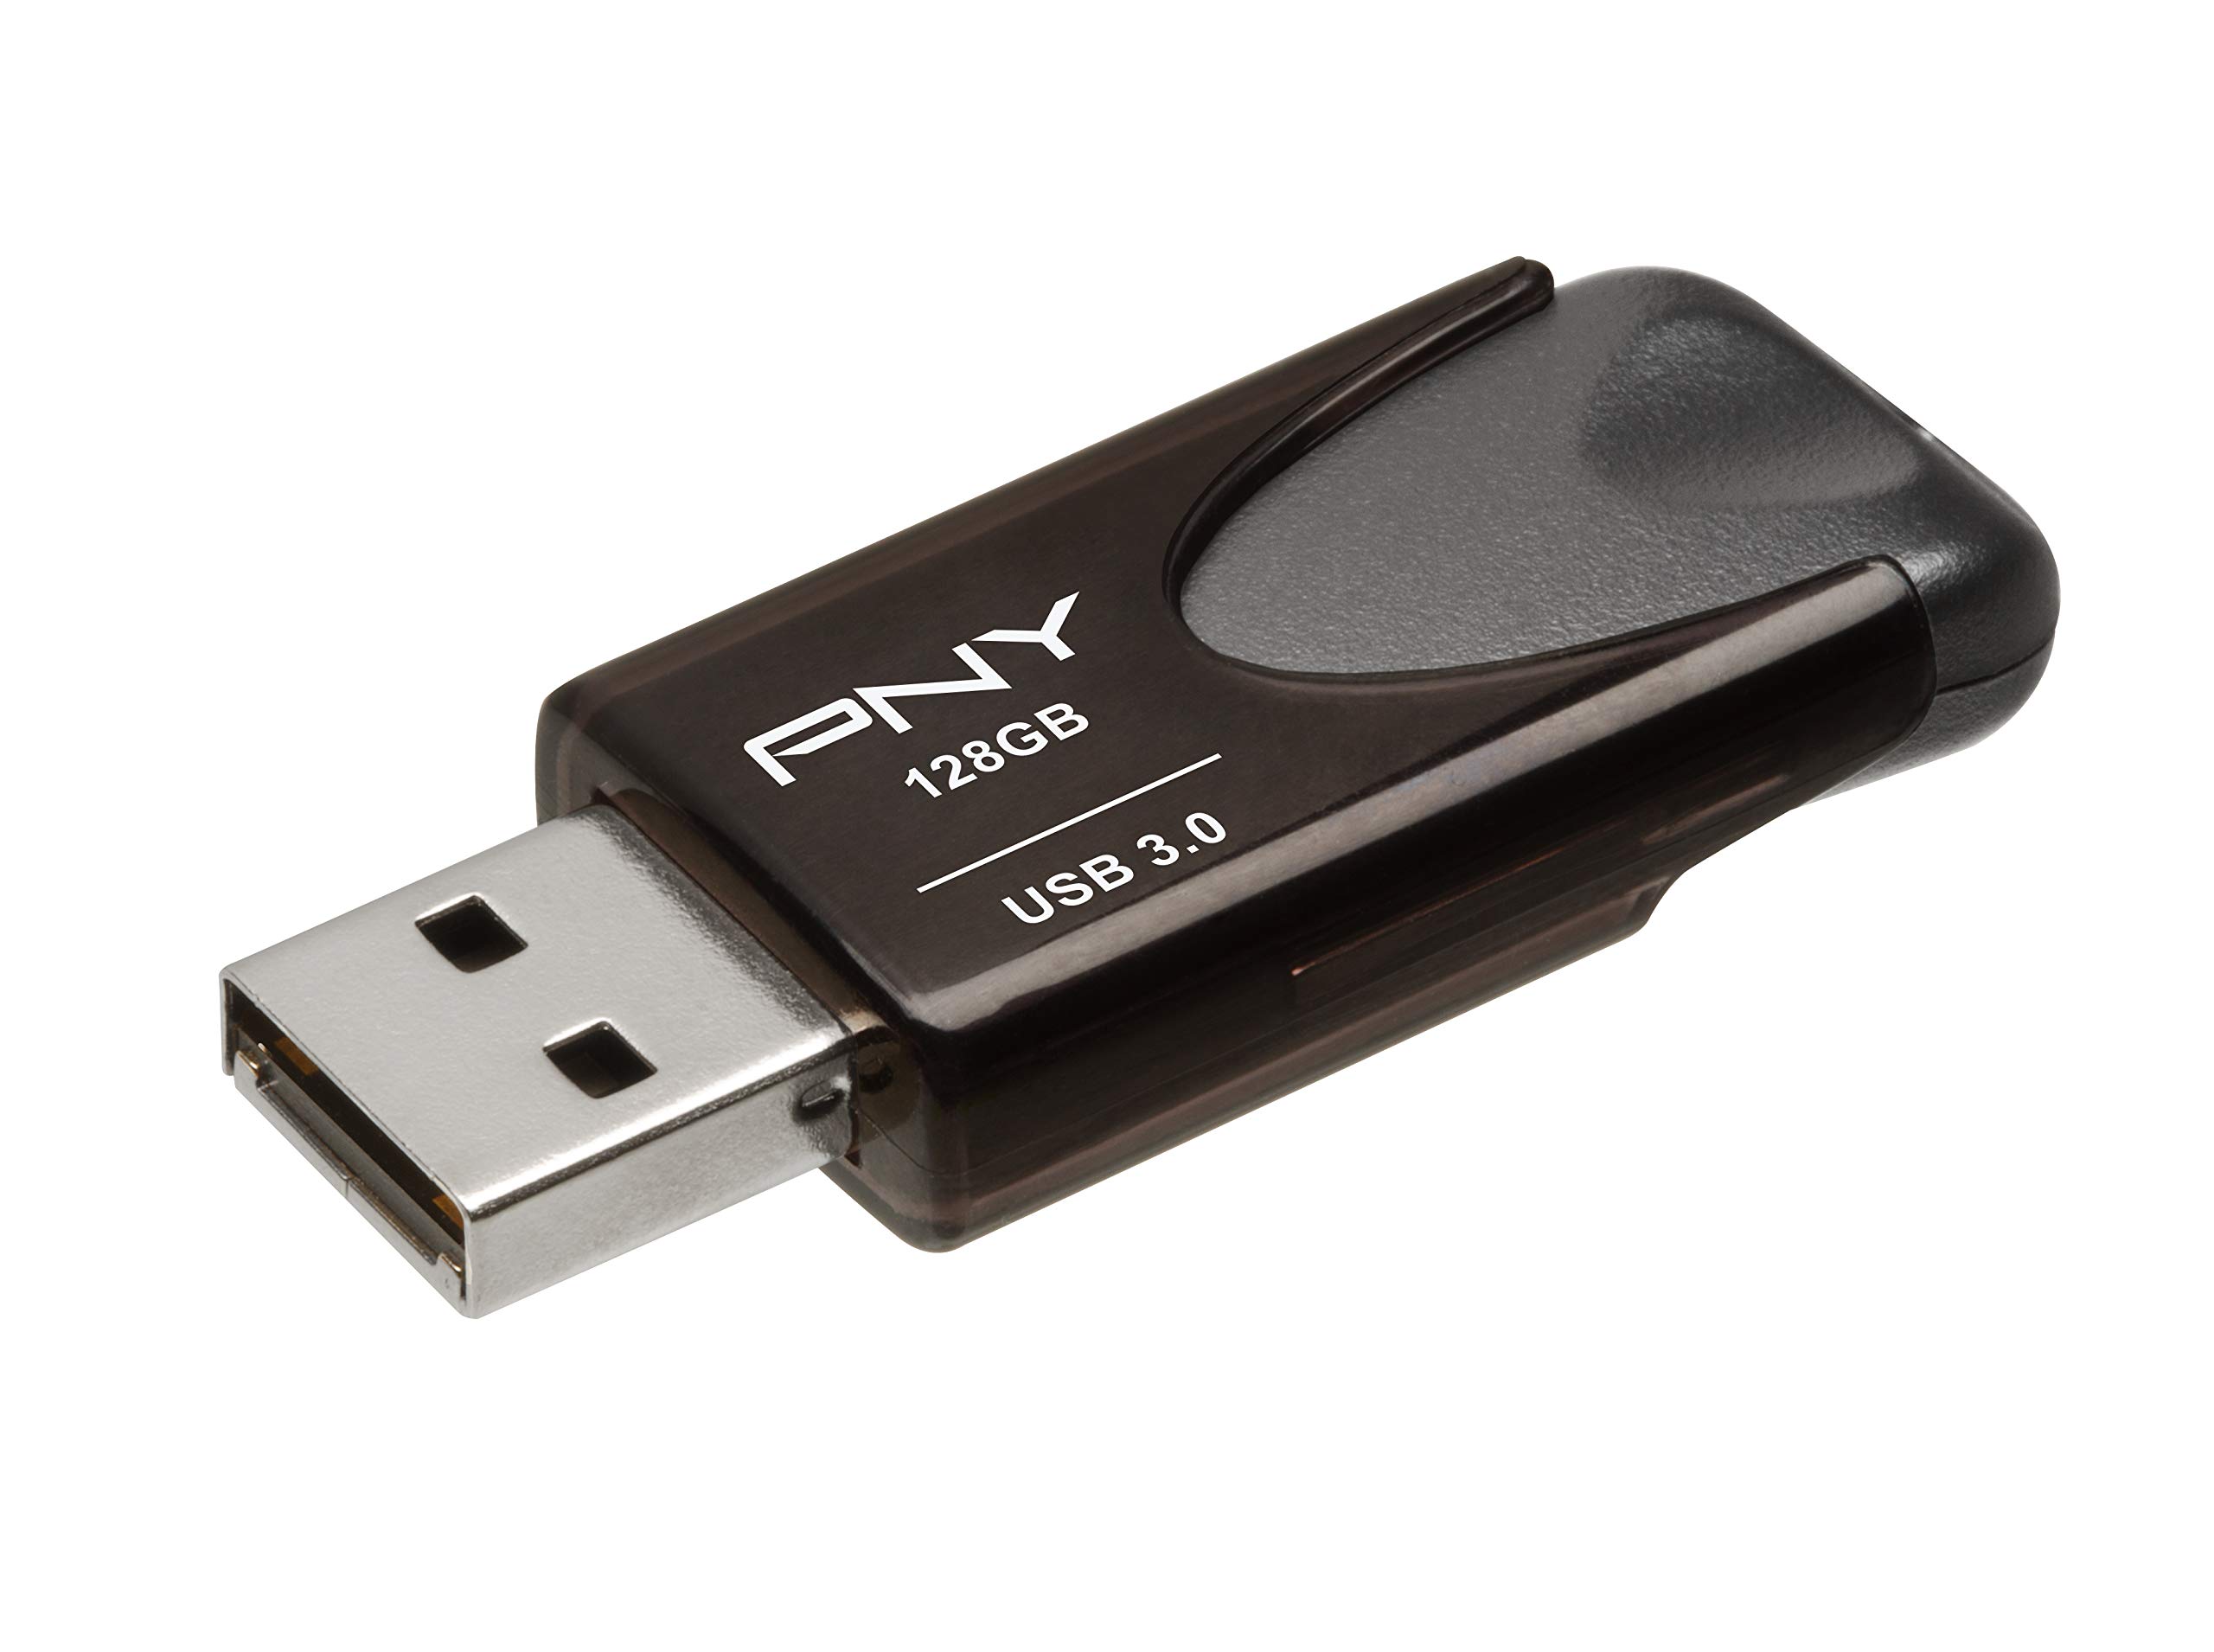 PNY 128GB Turbo Attache 4 USB 3.0 Flash Drive Black P-FD128TBAT4-GE - $14.99 at Best Buy